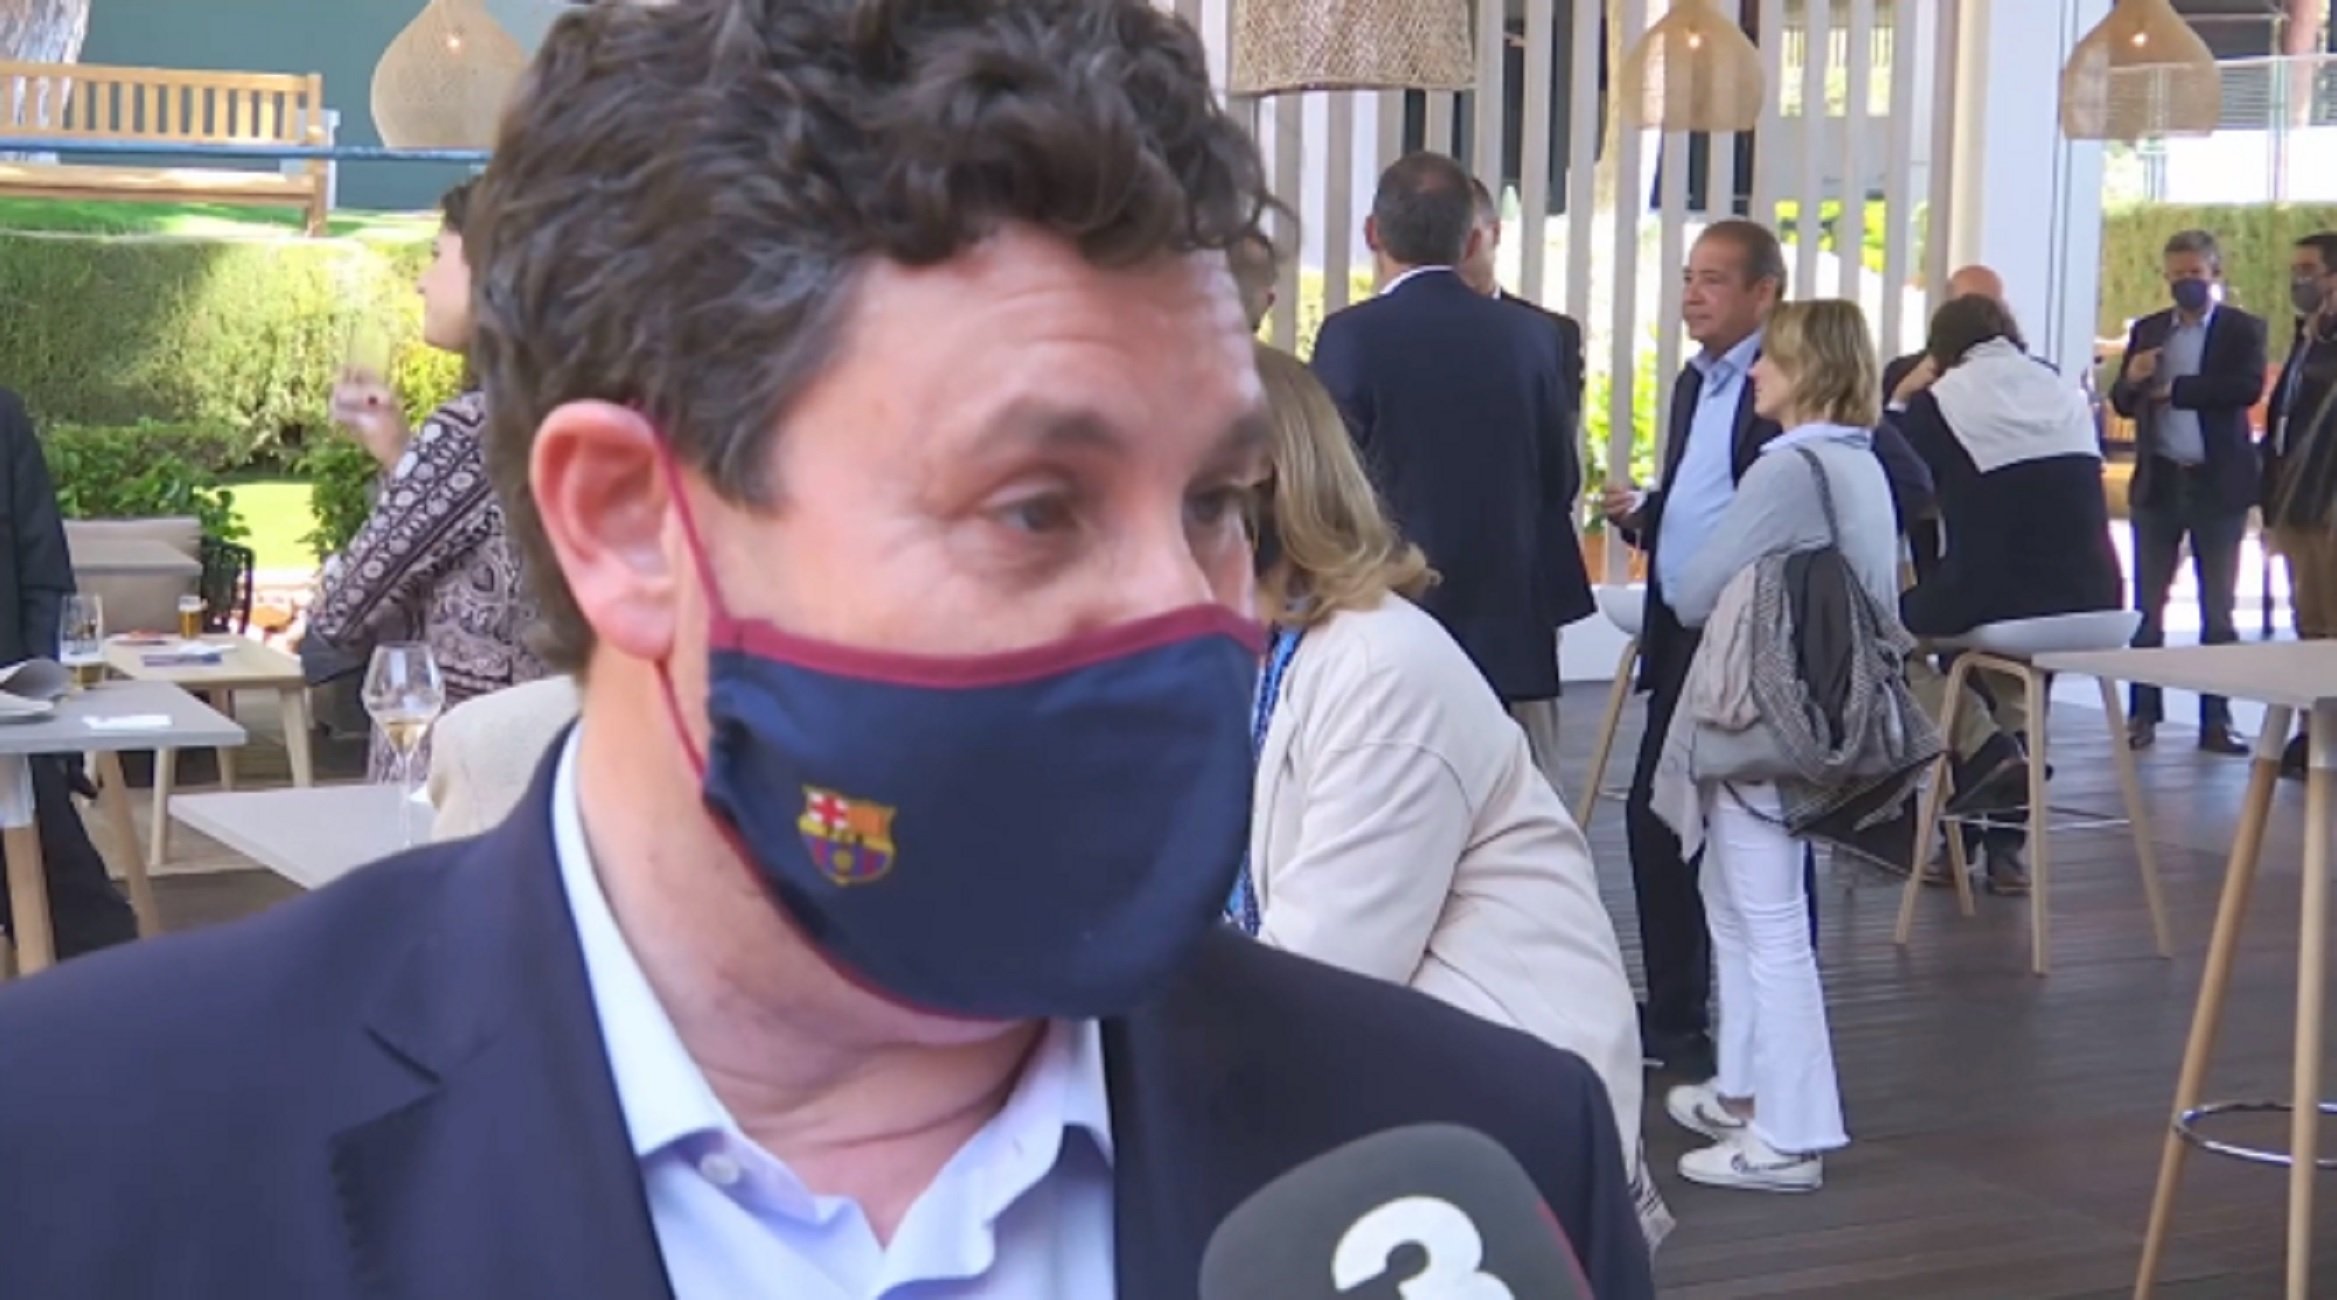 Eduard Romeu, vicepresident del Barça: "La Superlliga requereix molt diàleg"